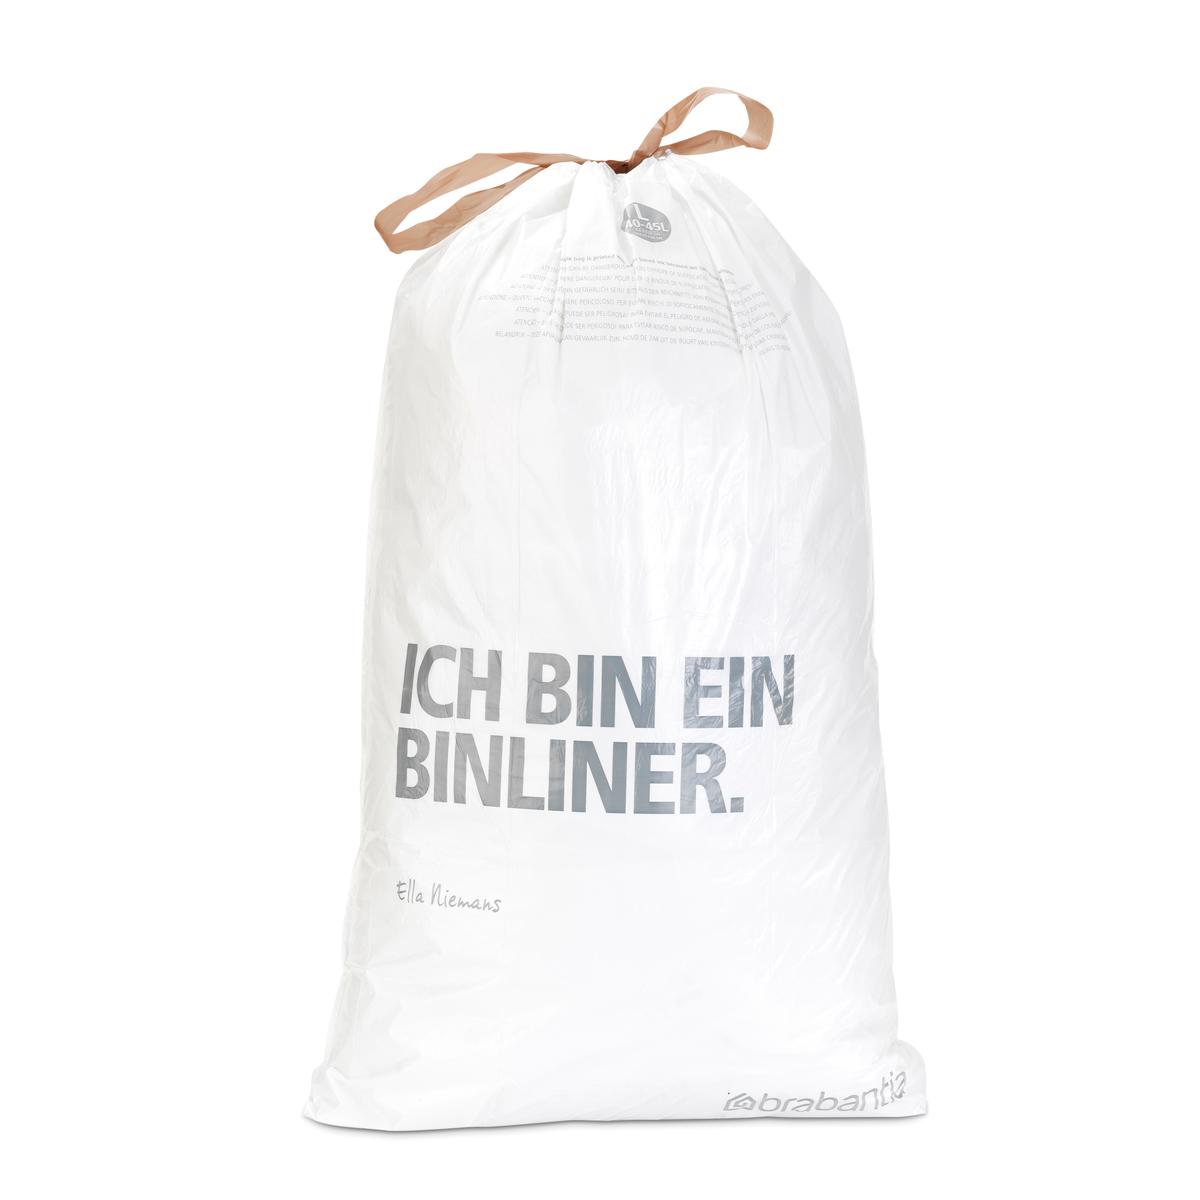 Lot de 6 distributeurs de 40 sacs poubelles 23/30 l blanc code g (dont 1  offert) Couleur multicolore Brabantia